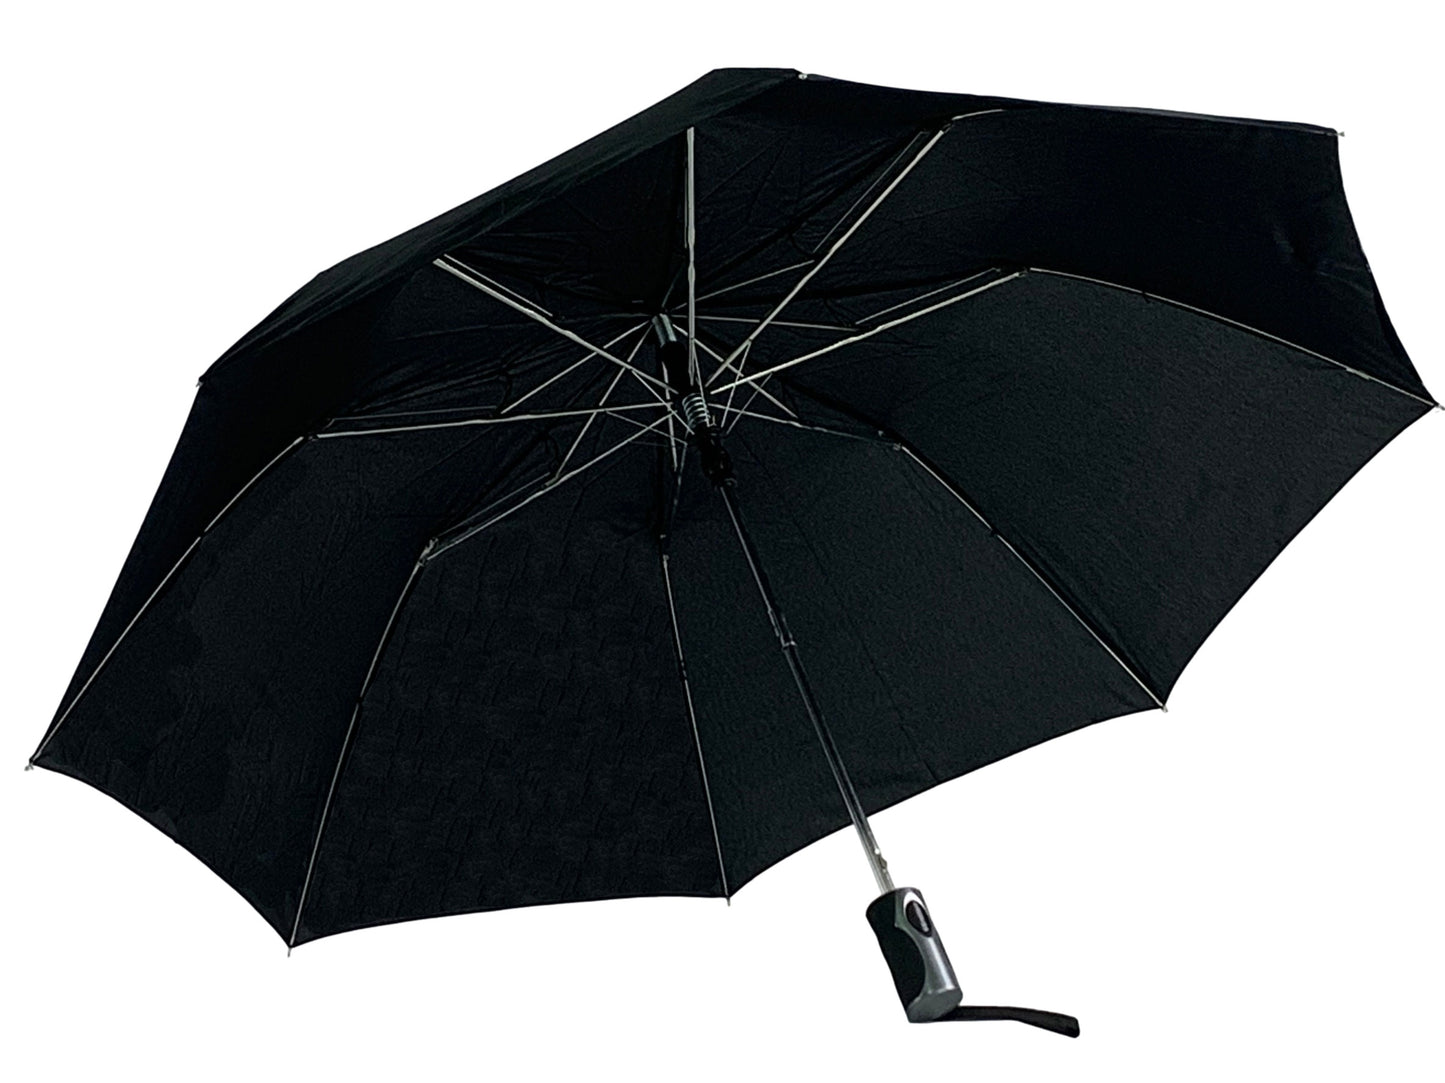 Μαύρη Ομπρέλα Βροχής Σπαστή, Αντιανεμική, και Αυτόματη (κωδικός 01-02-0260).